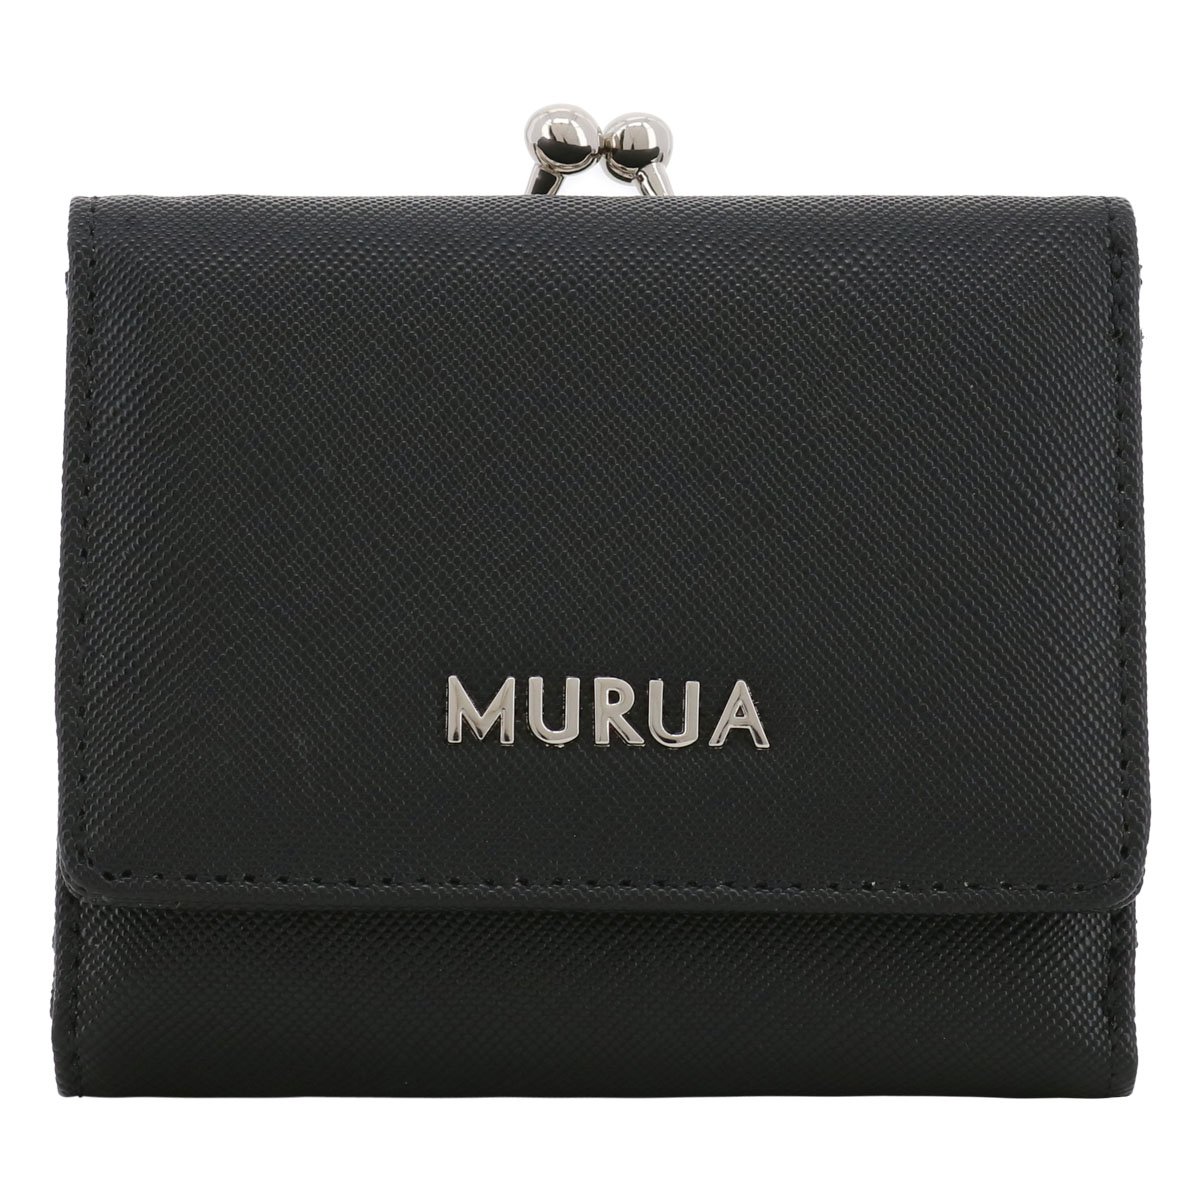 ムルーア 財布 三つ折り がま口 レディース MR-W1142 PLAIN MURUA 三